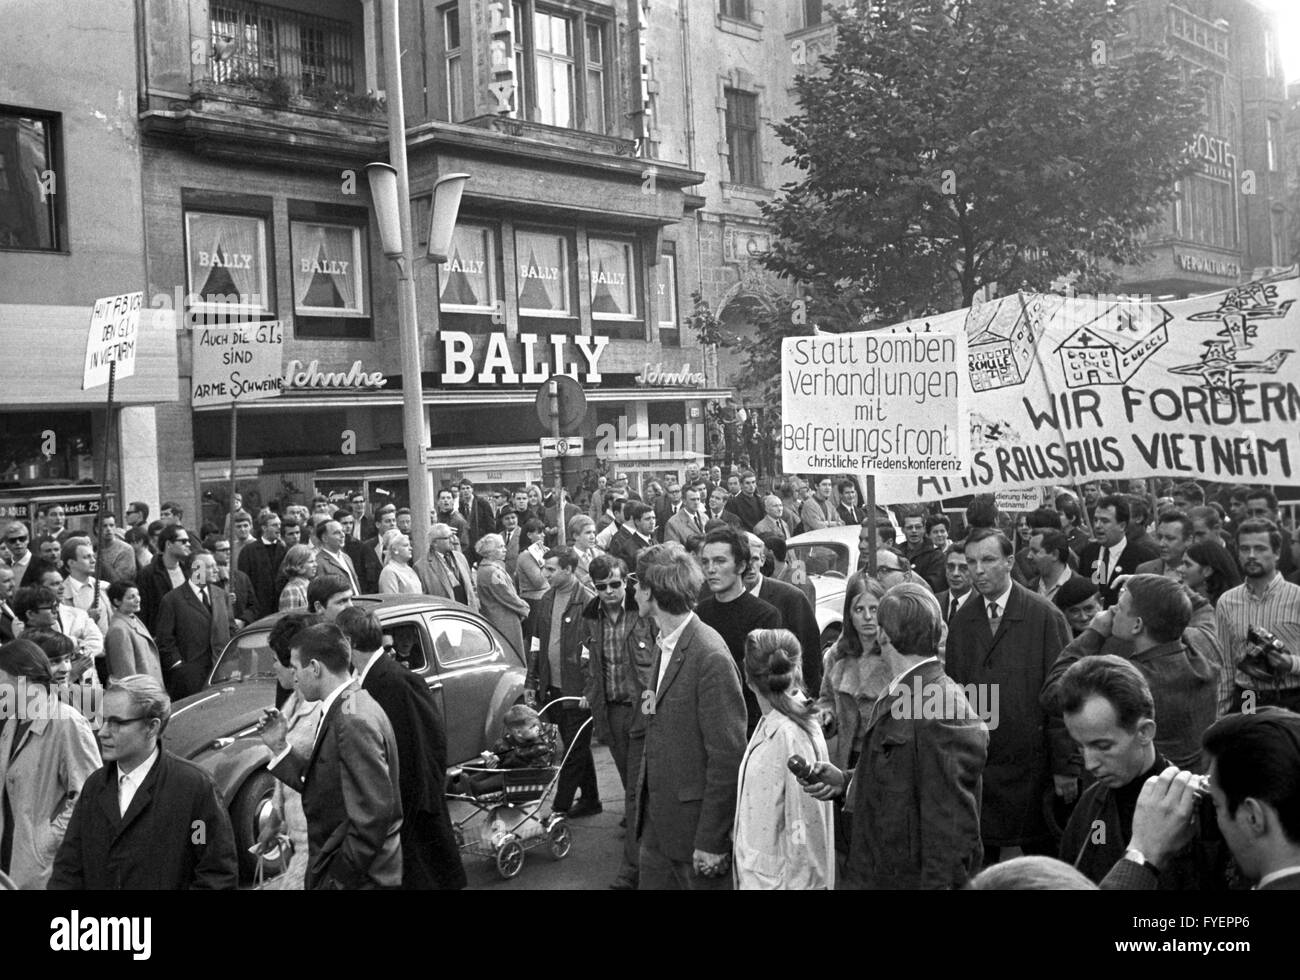 Dimostrazione di marzo a Kurfuerstendamm. Circa 30 gruppi, principalmente le organizzazioni studentesche, dimostrare contro di noi policitcs e la guerra del Vietnam il 21 ottobre 1967 a Berlino. Foto Stock